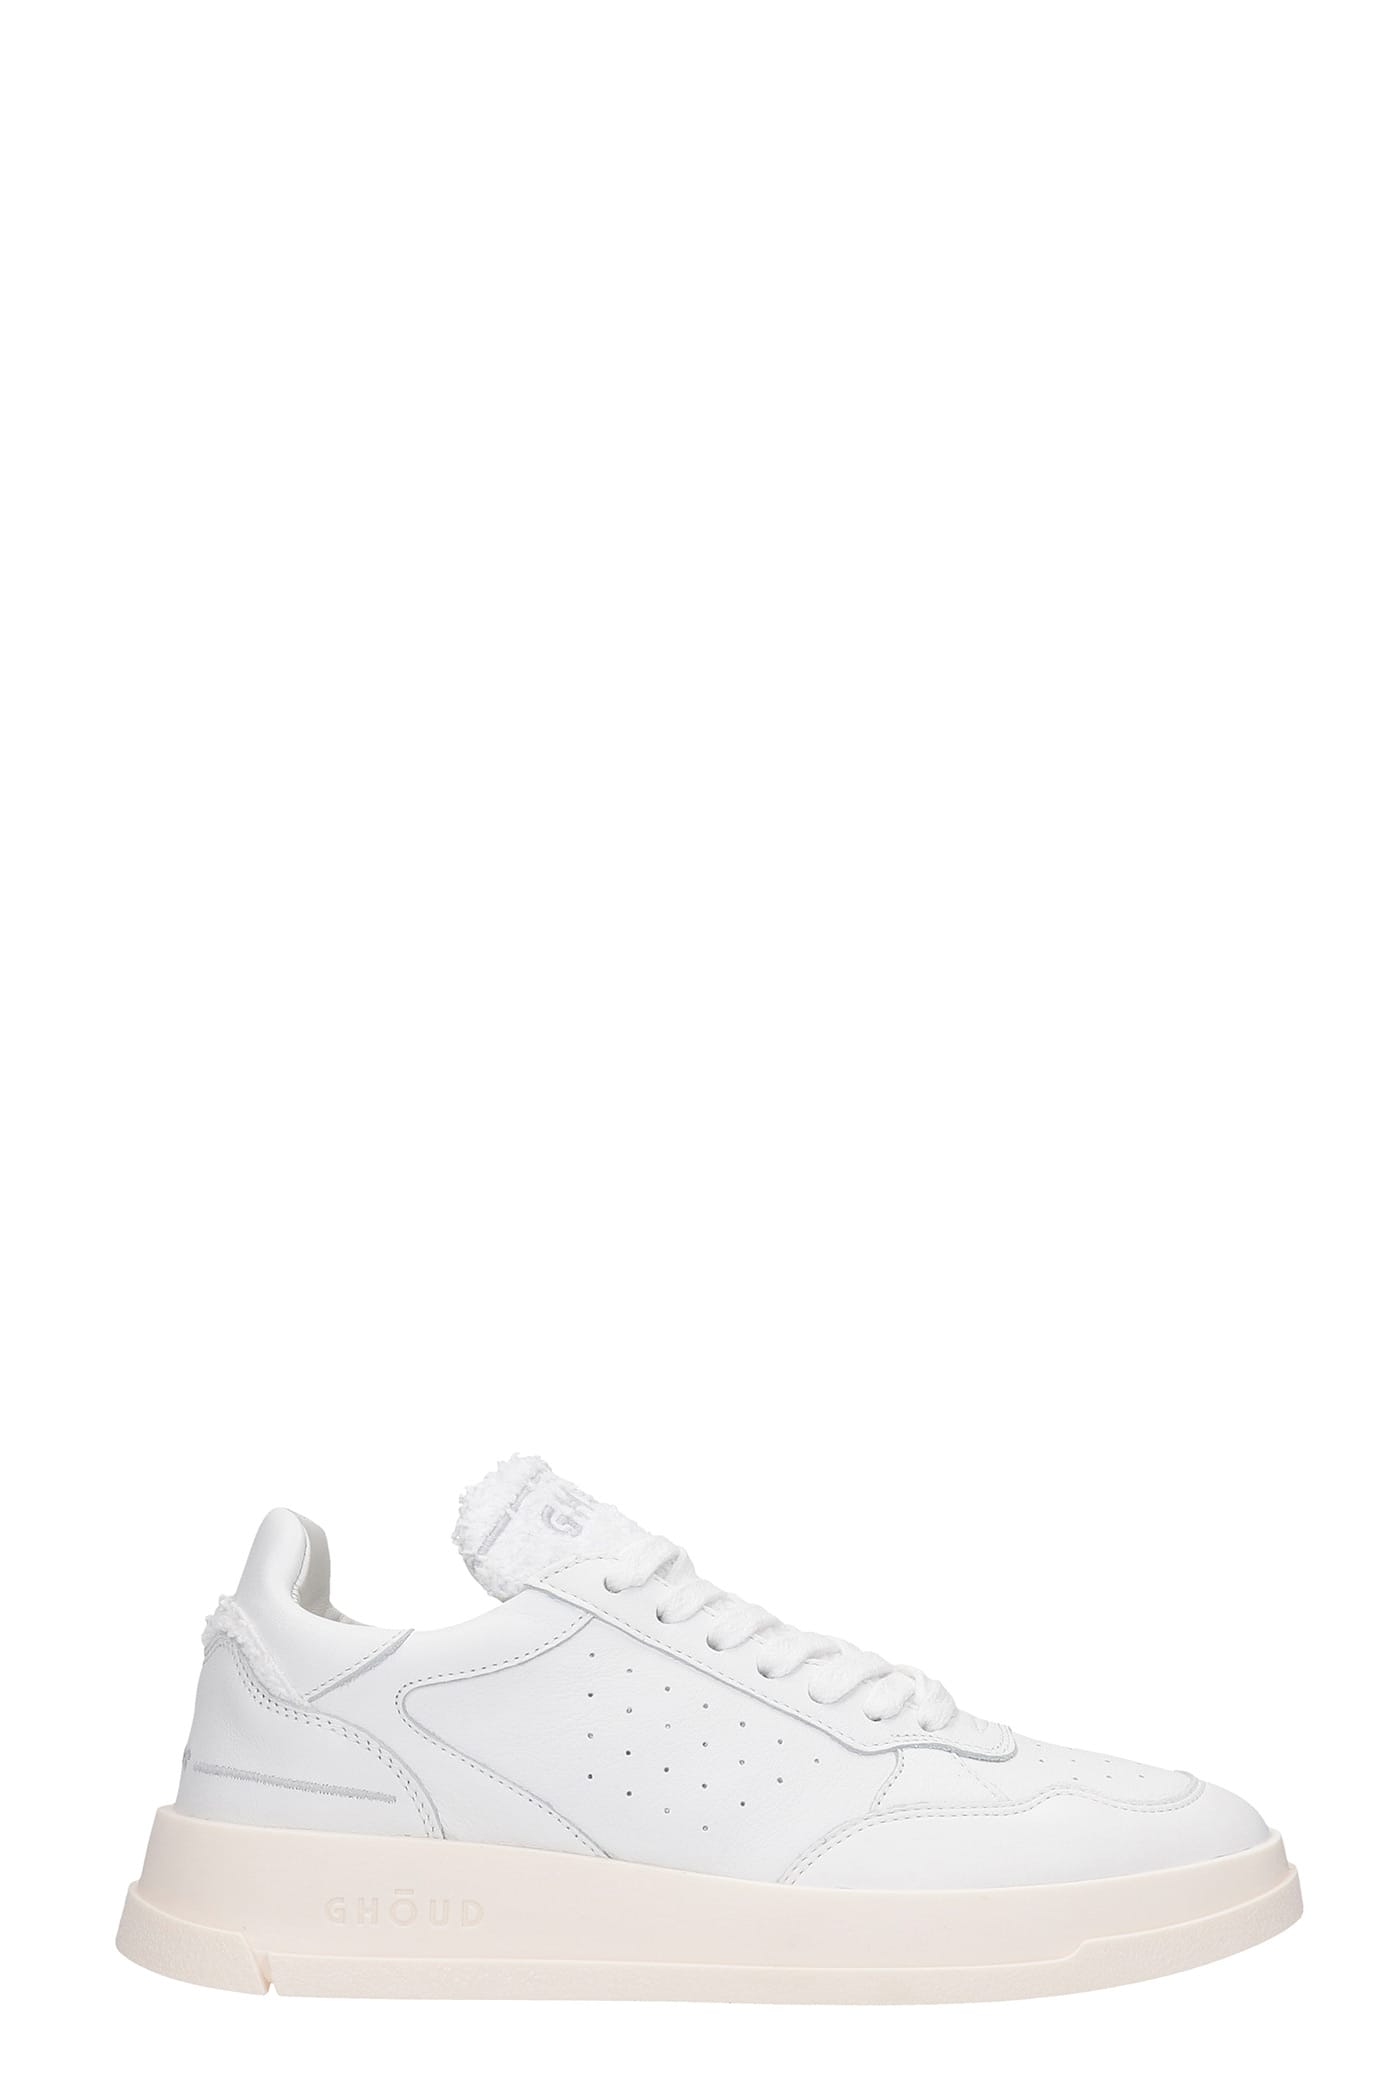 GHOUD Tweener Sneakers In White Leather